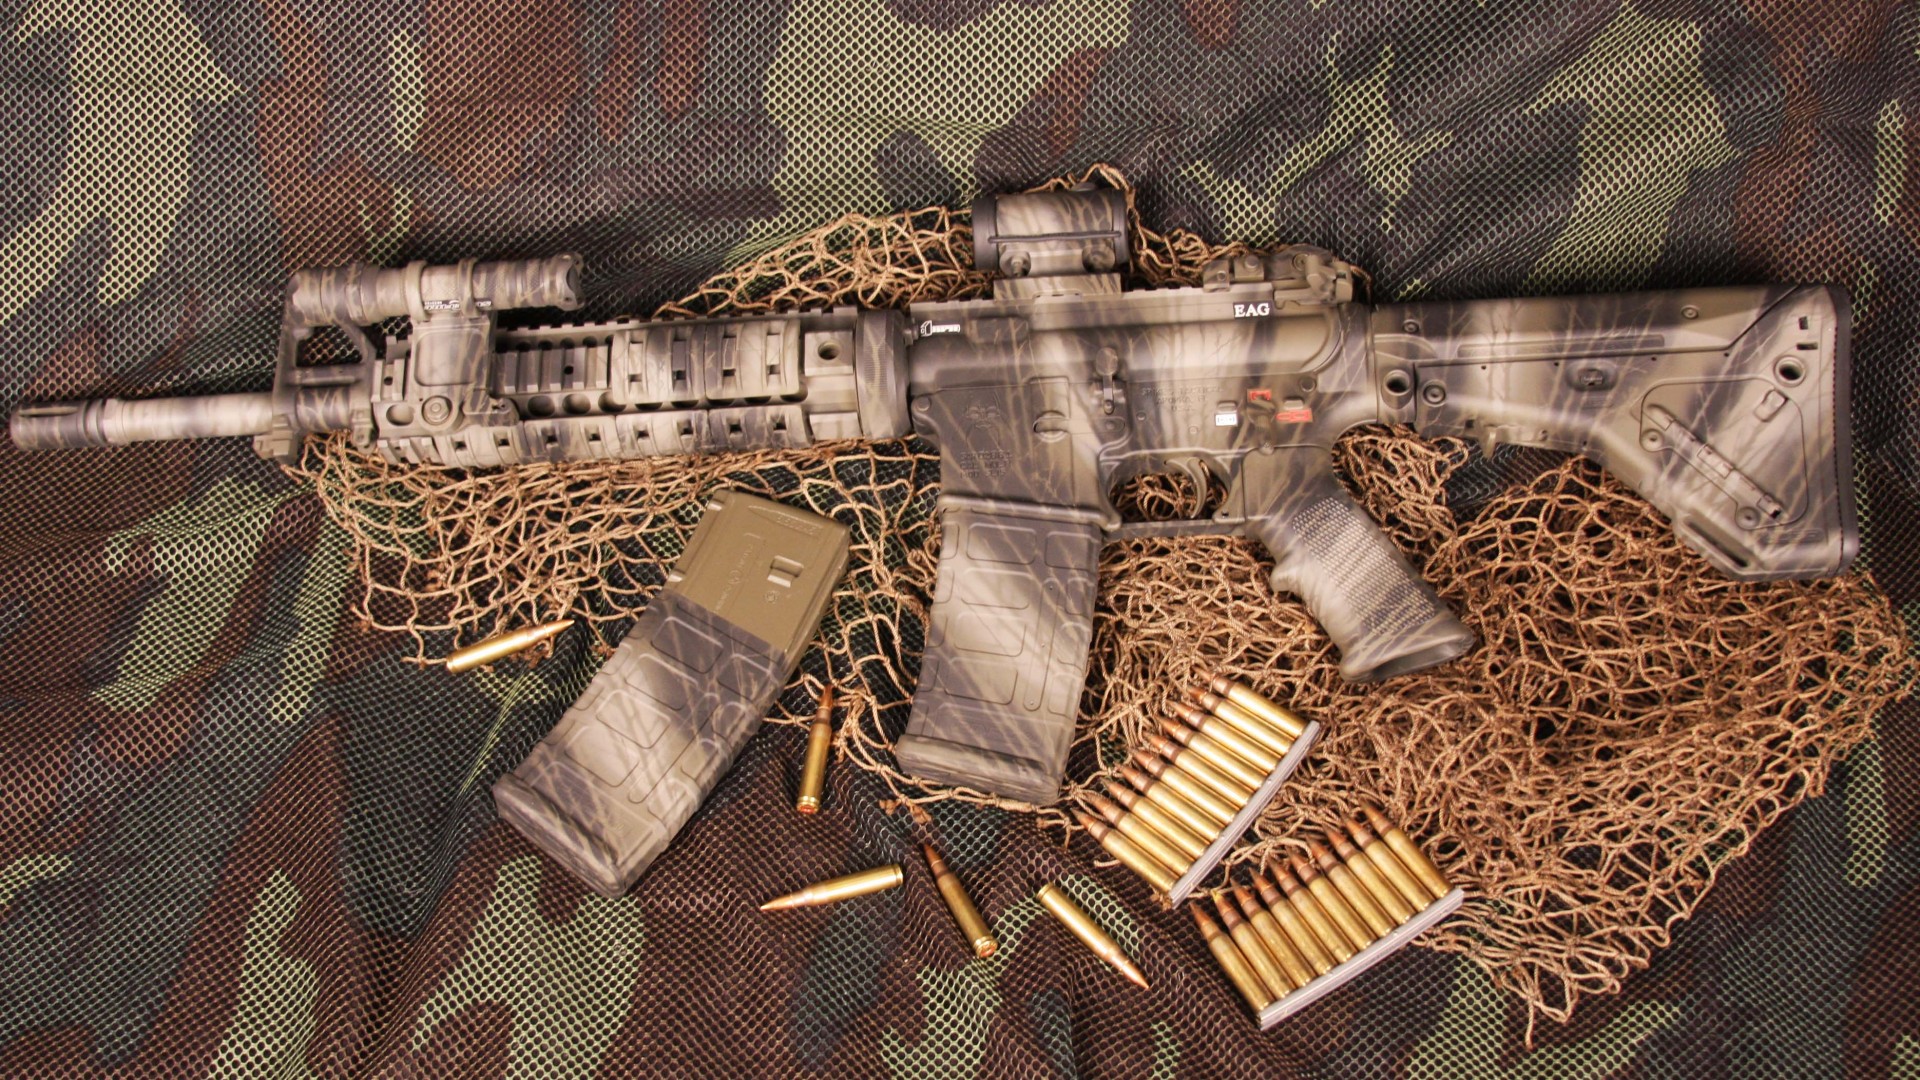 винтовка, АР-15, камуфляж, амуниция, AR-15, rifle, U.S. Armed Force, semi-automatic, multicam, camo, ammunition (horizontal)